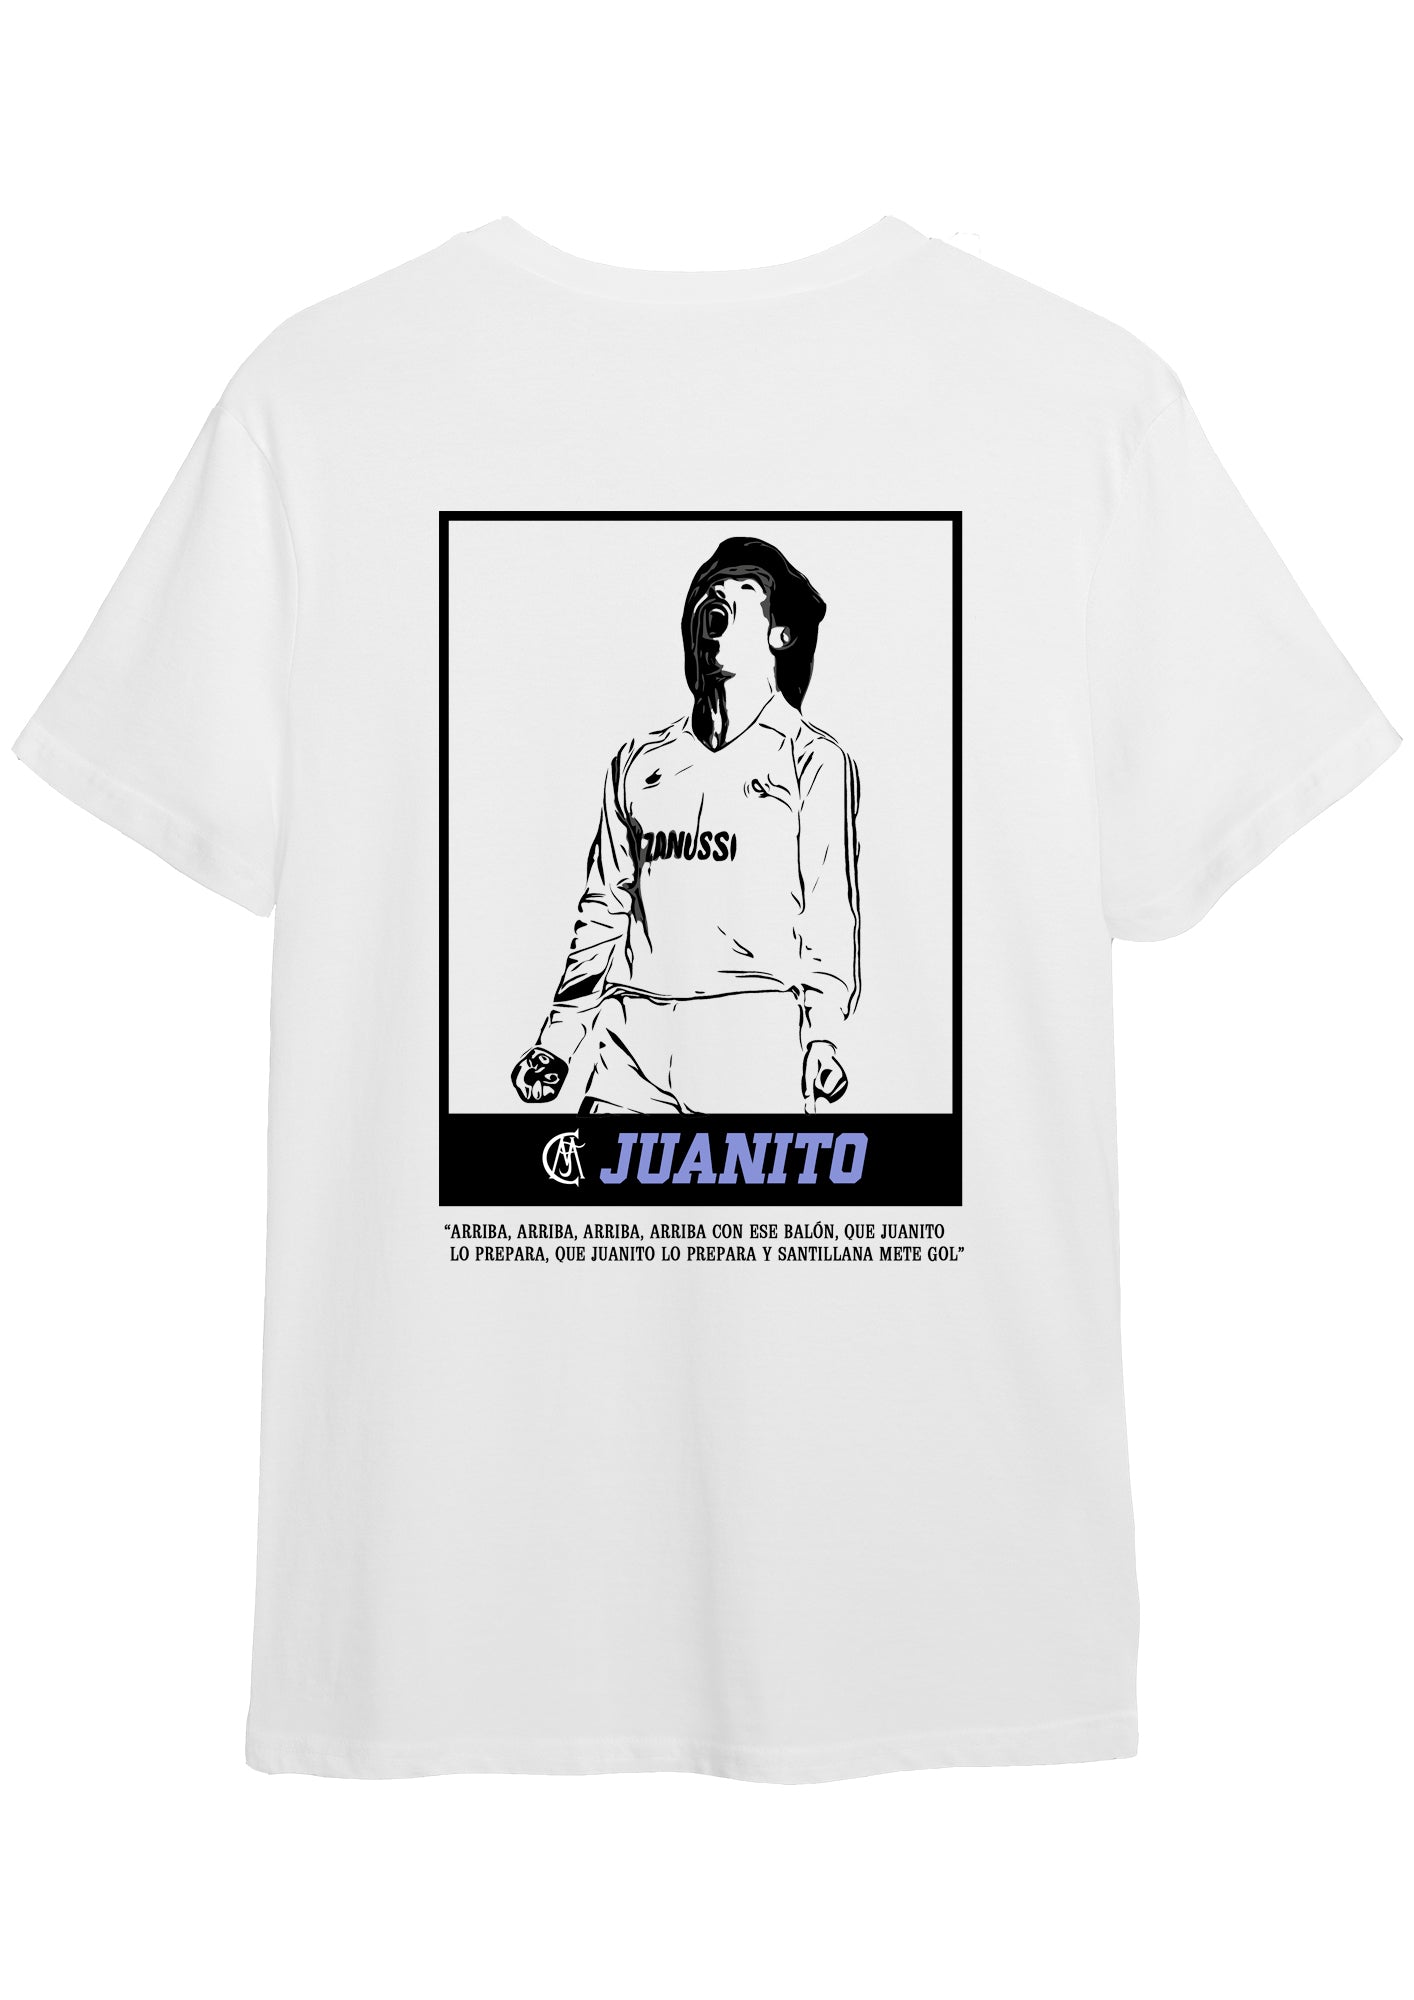 Camiseta "JUANITO" de Juanito Gómez